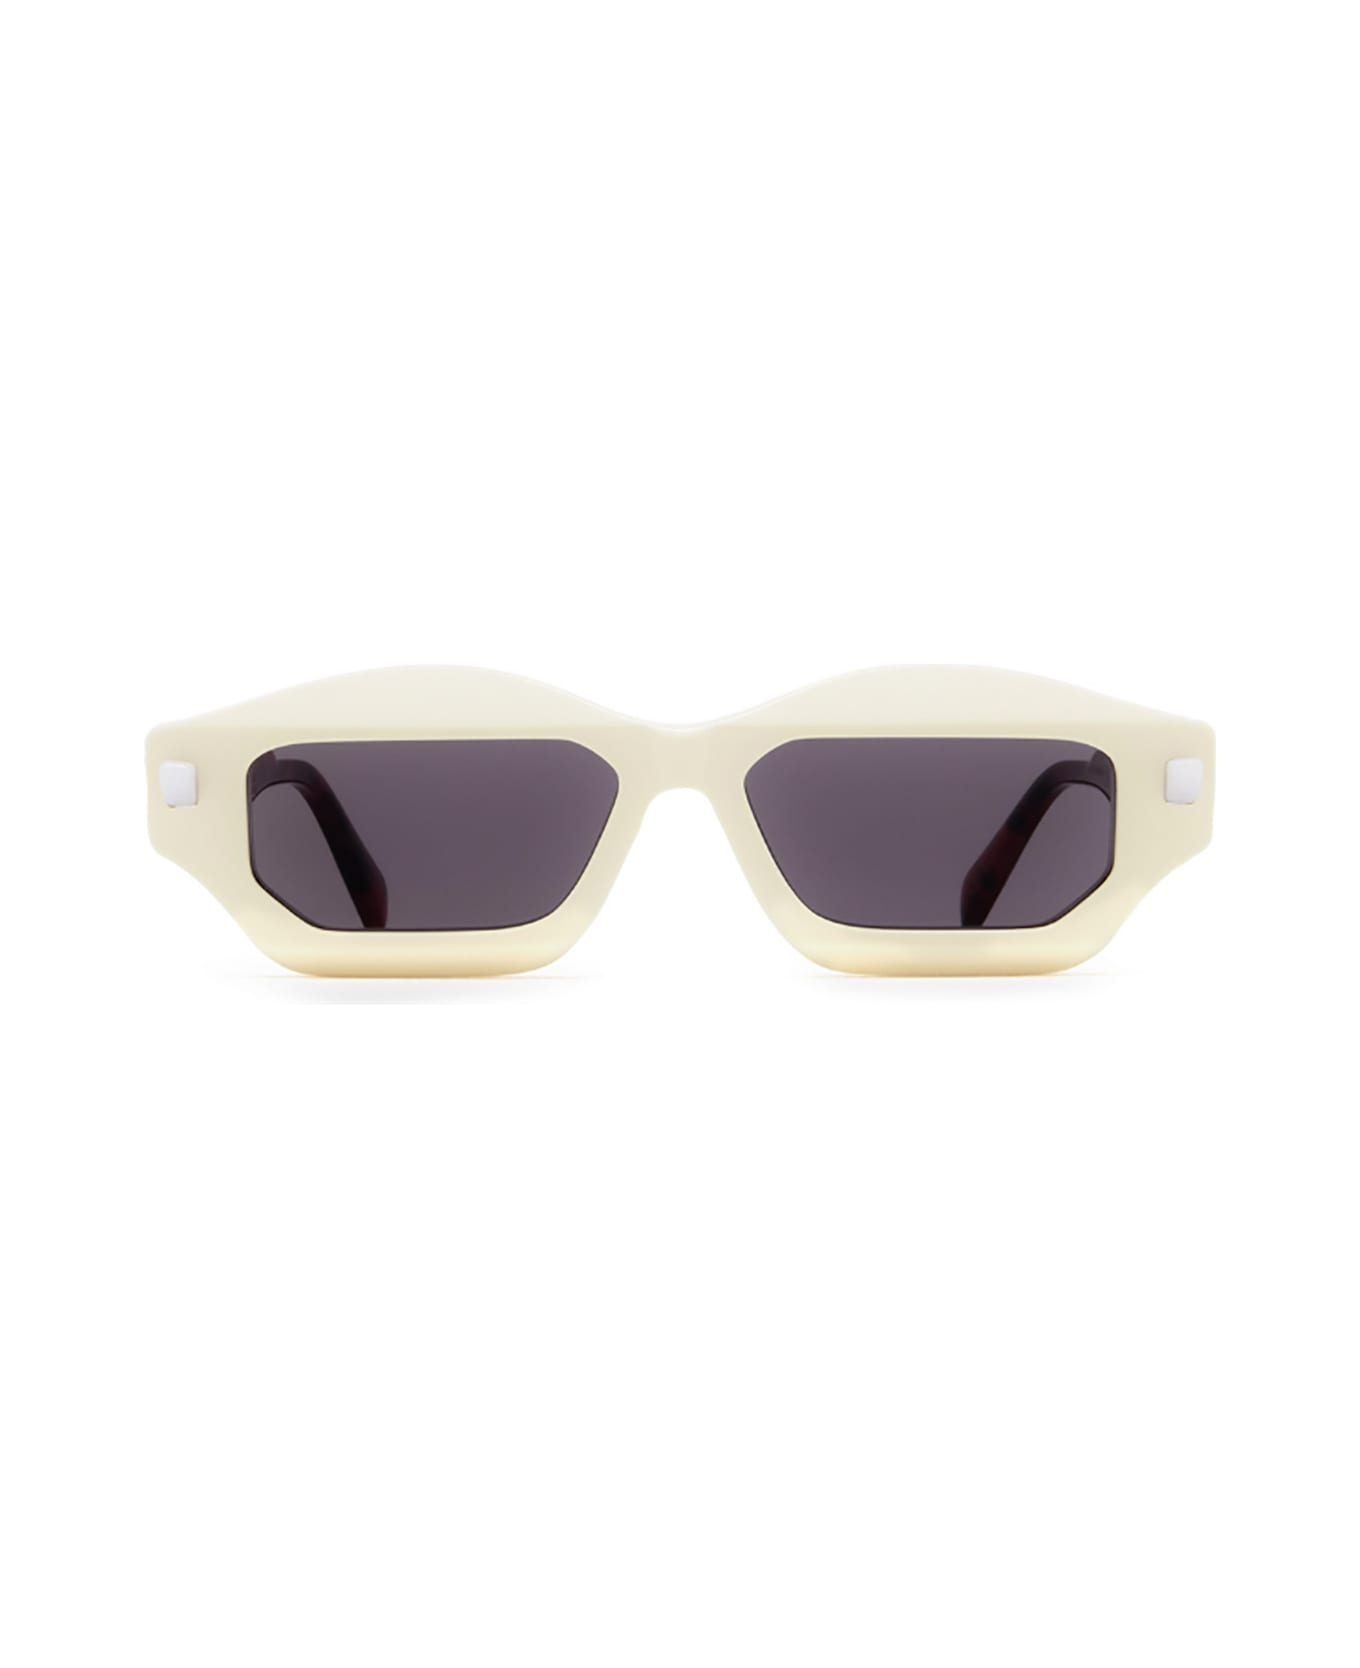 Kuboraum Q6 Sunglasses - Iy